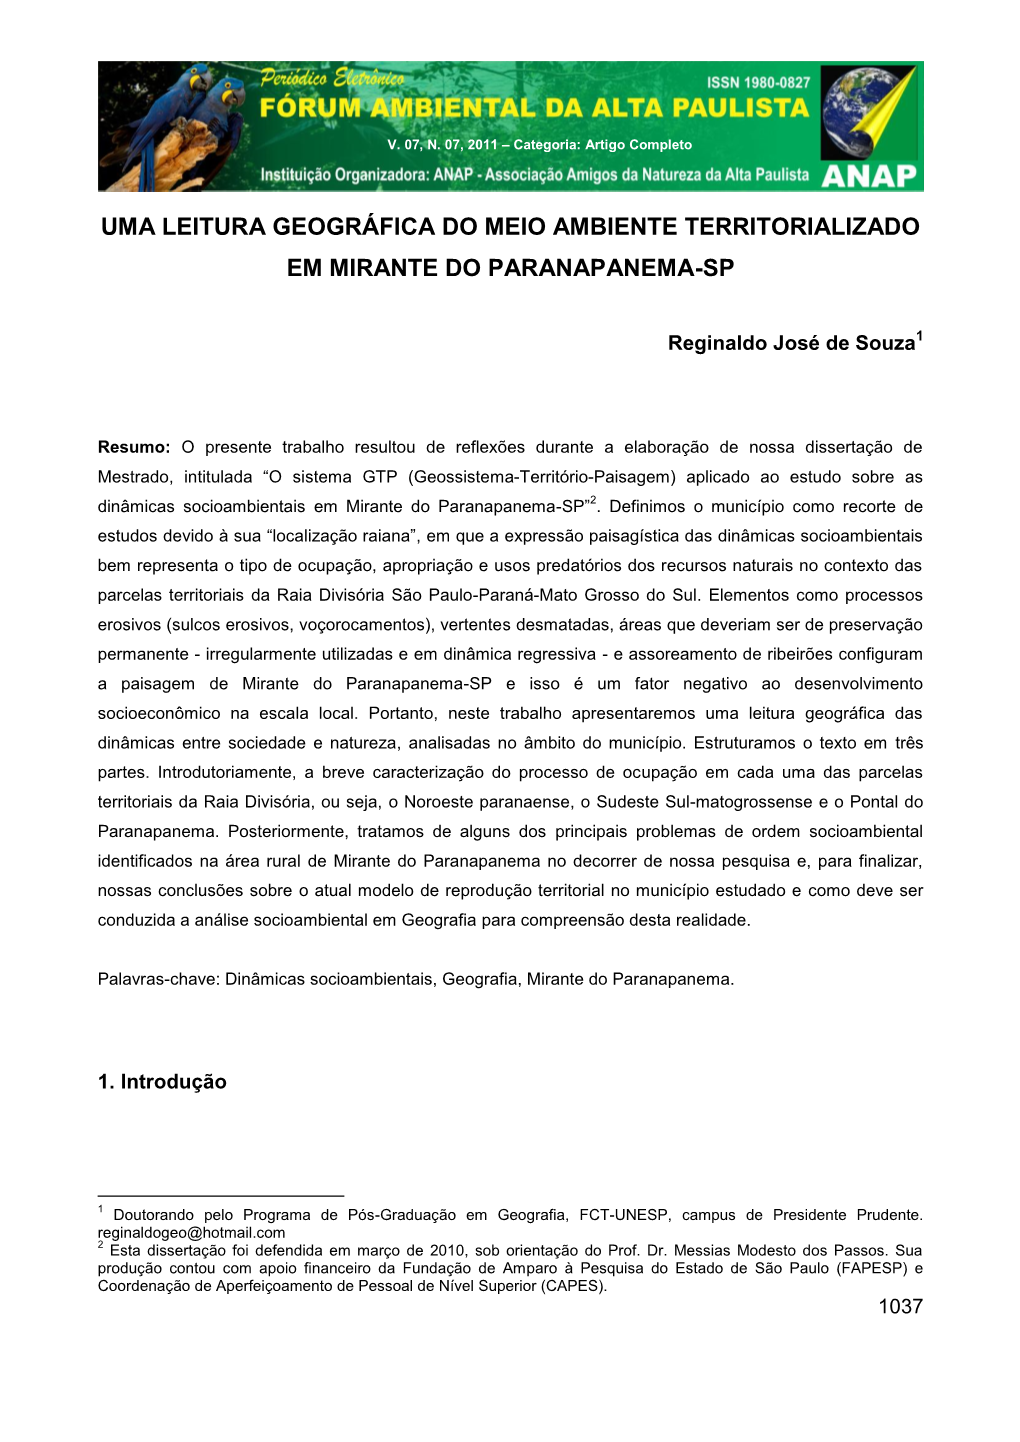 Uma Leitura Geográfica Do Meio Ambiente Territorializado Em Mirante Do Paranapanema-Sp